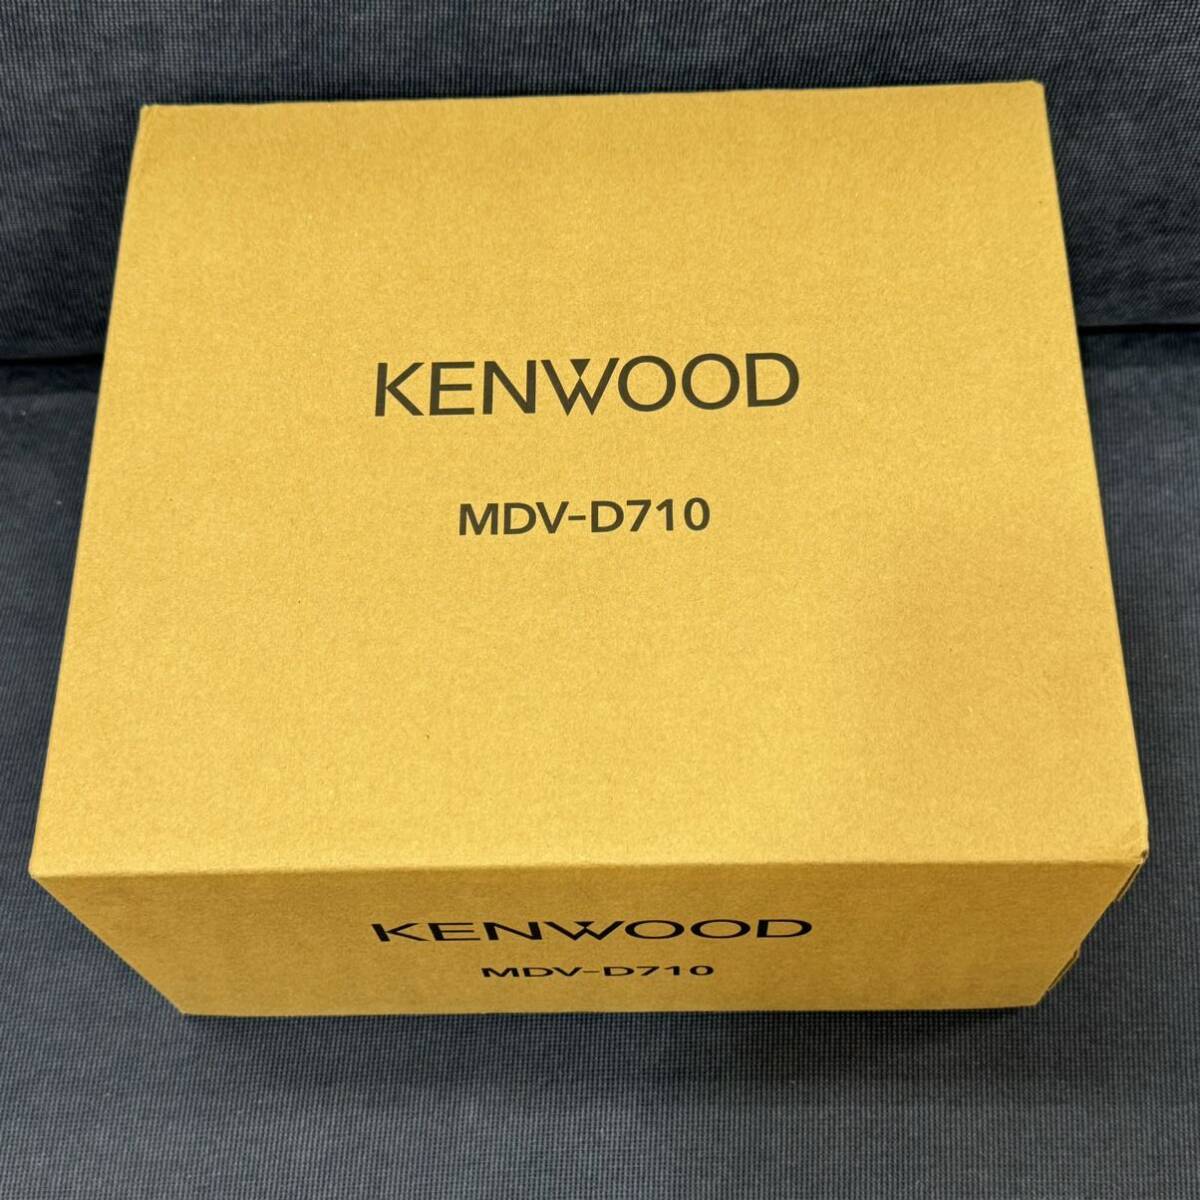 KENWOOD Kenwood MVD-D710 17835 unused S/NO 089S0541